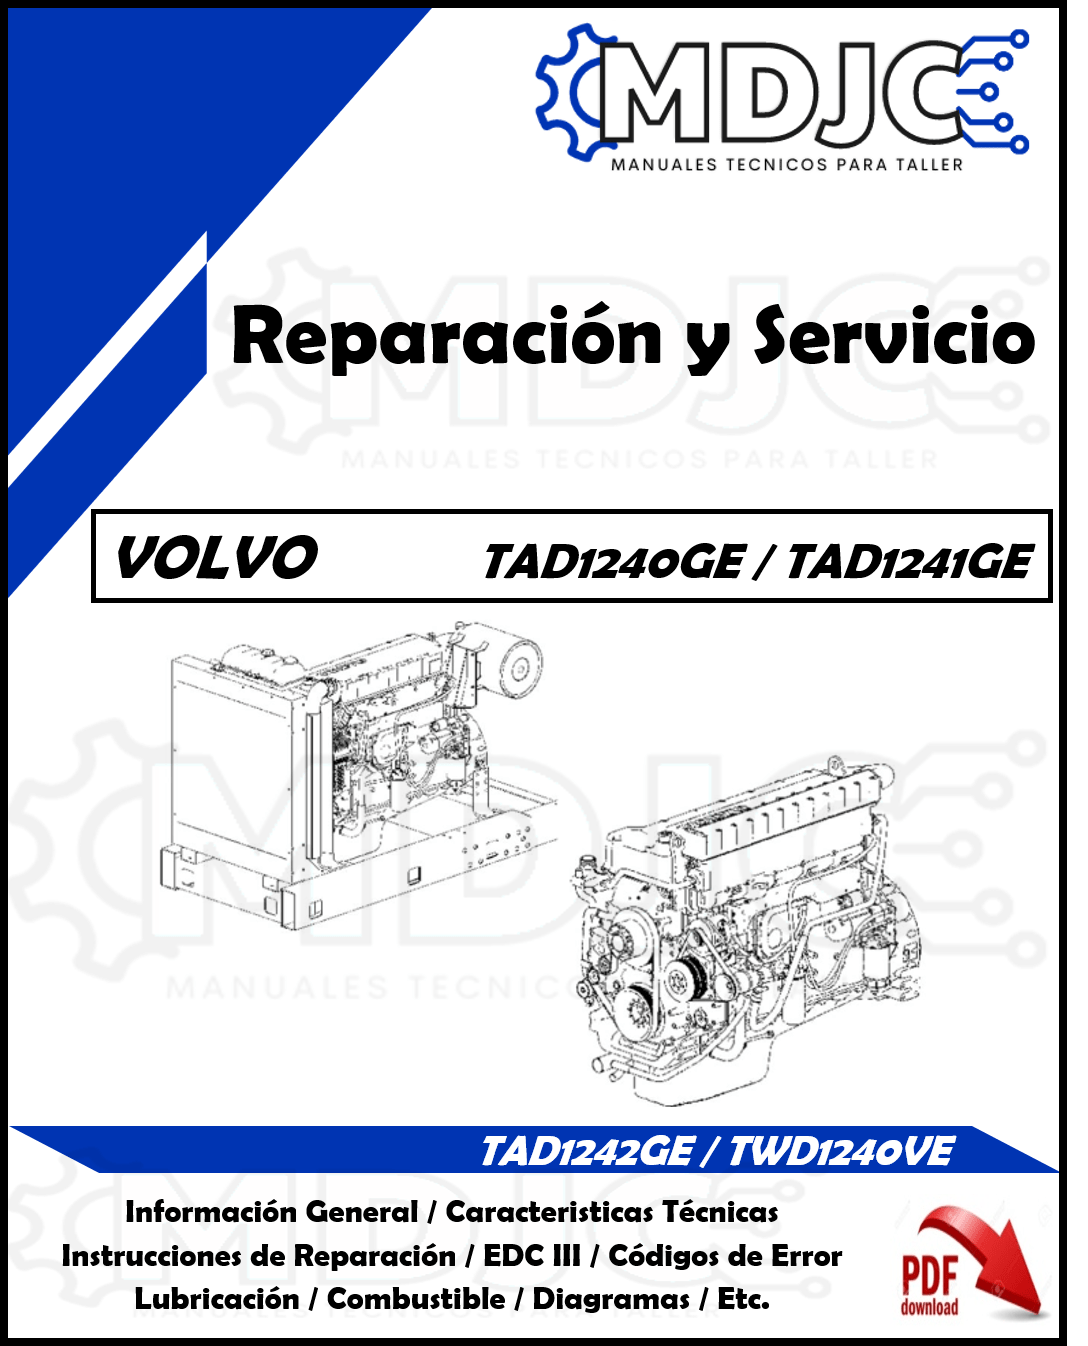 Manual de Taller (Reparación y Servicio) Motor Volvo TAD1240GE / TAD1241GE / TAD1242GE / TWD1240VE